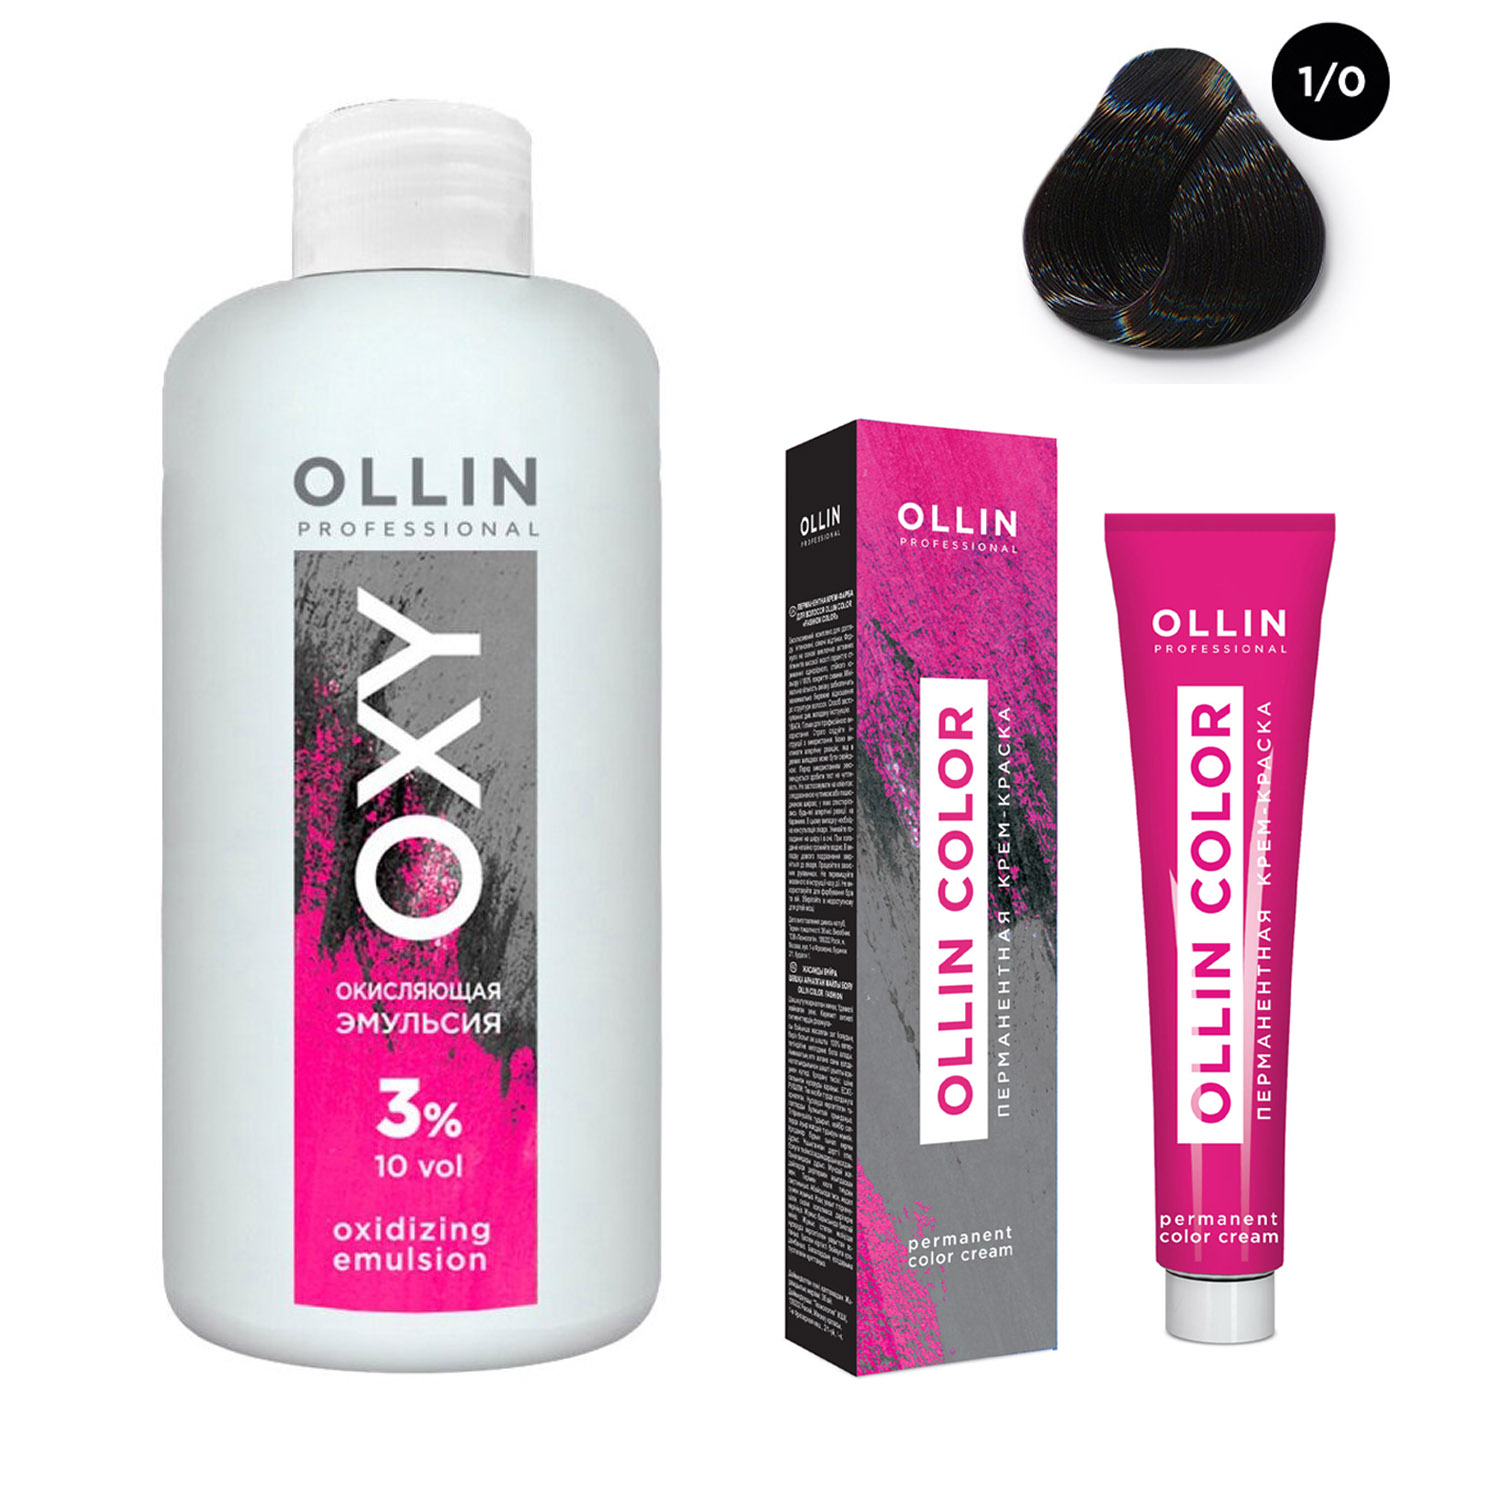 Ollin Professional Набор Перманентная крем-краска для волос Ollin Color оттенок 1/0 иссиня-черный 100 мл + Окисляющая эмульсия Oxy 3% 150 мл (Ollin Professional, Ollin Color) фото